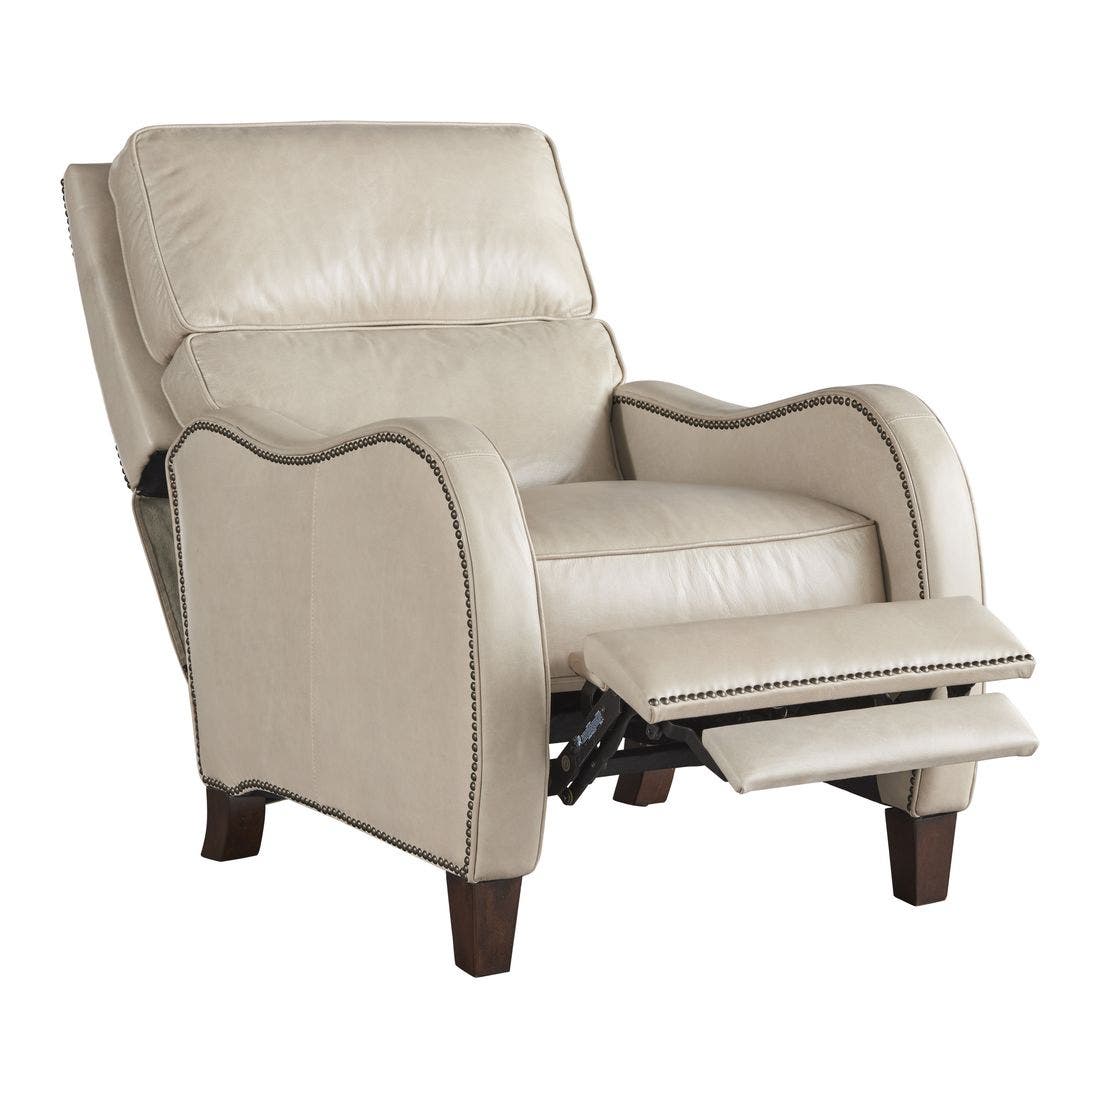 19151915-790557-793-furniture-sofa-recliner-recliners-01